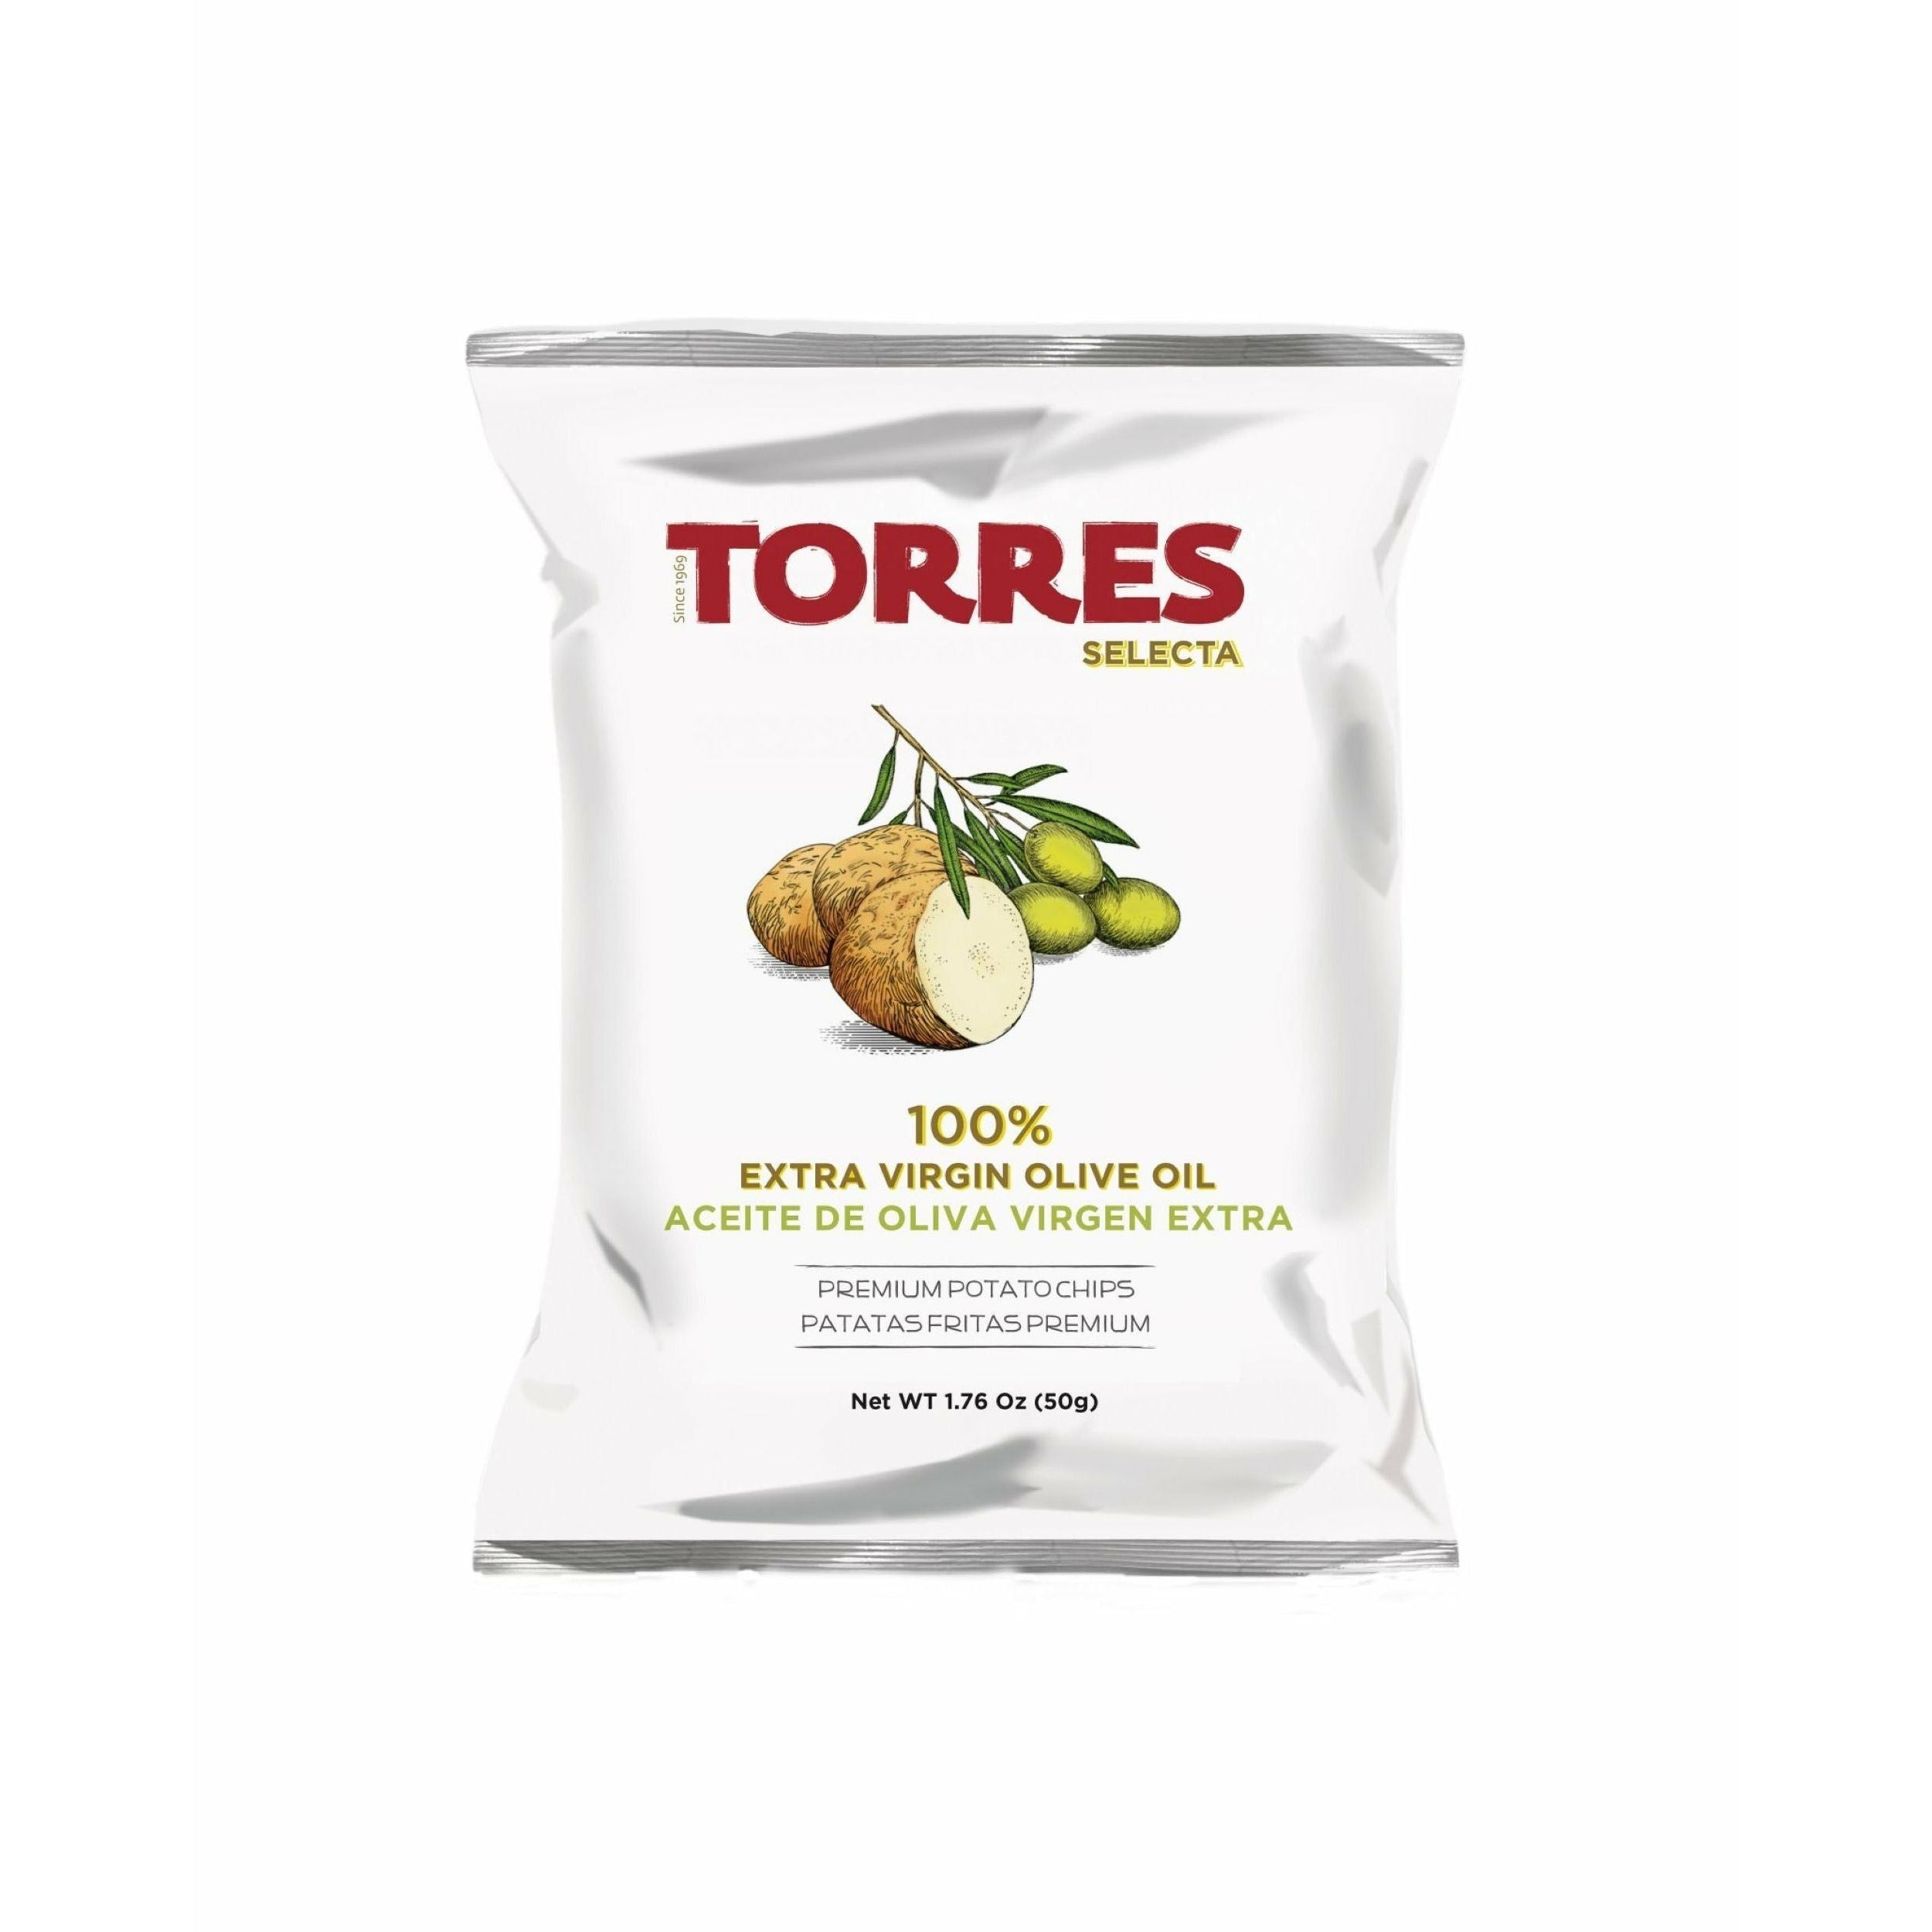 Torres Selecta Olive Oil Chips, 50g